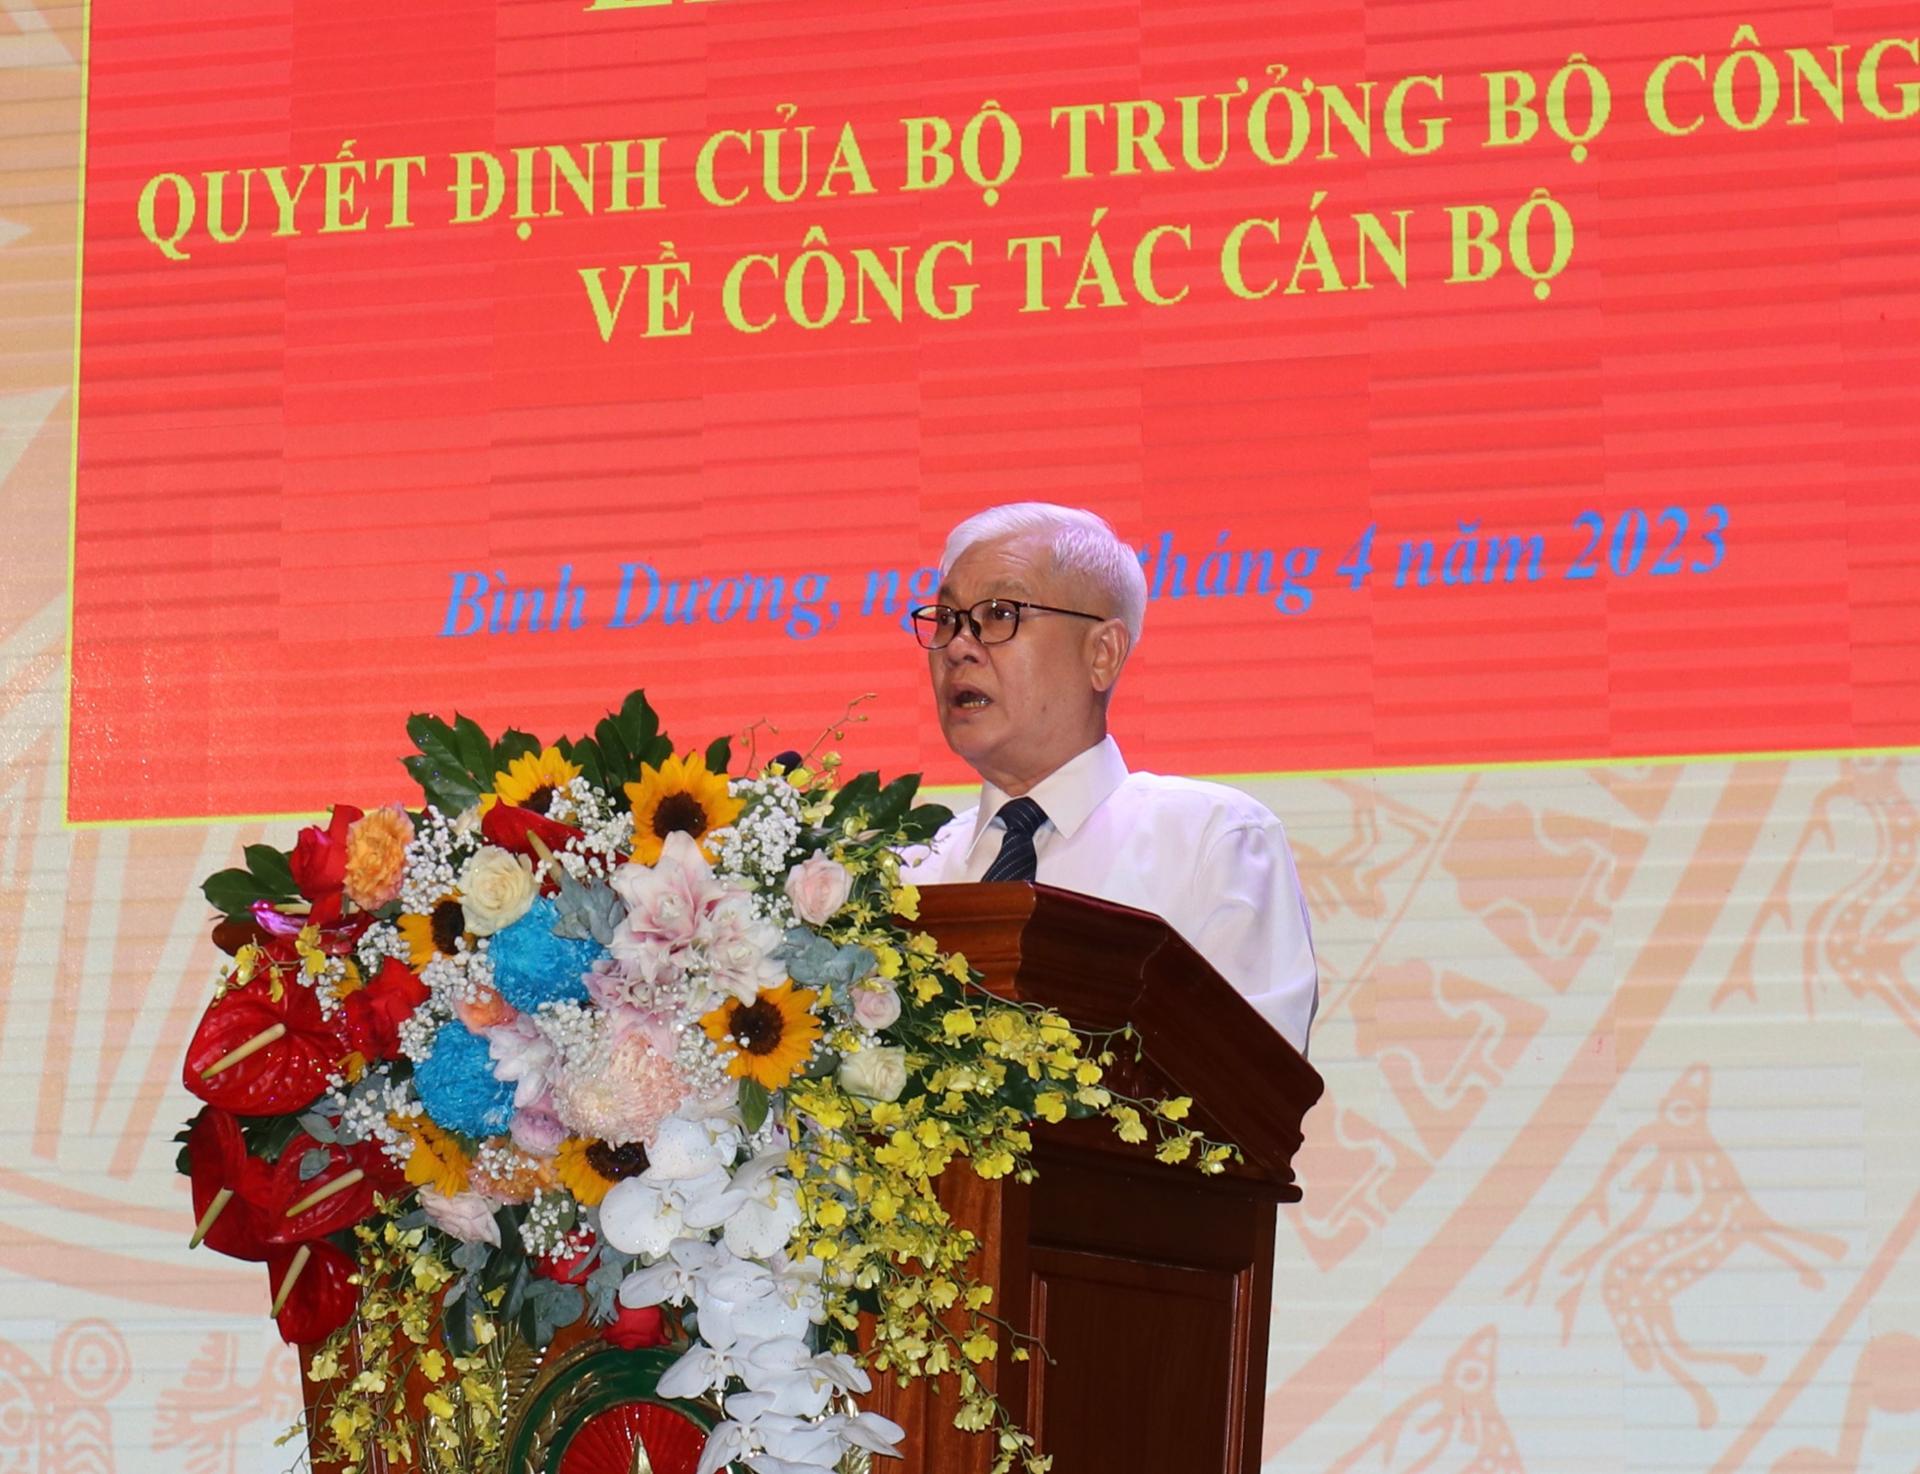 Bí thư Tỉnh ủy Nguyễn Văn Lợi phát biểu tại buổi lễ